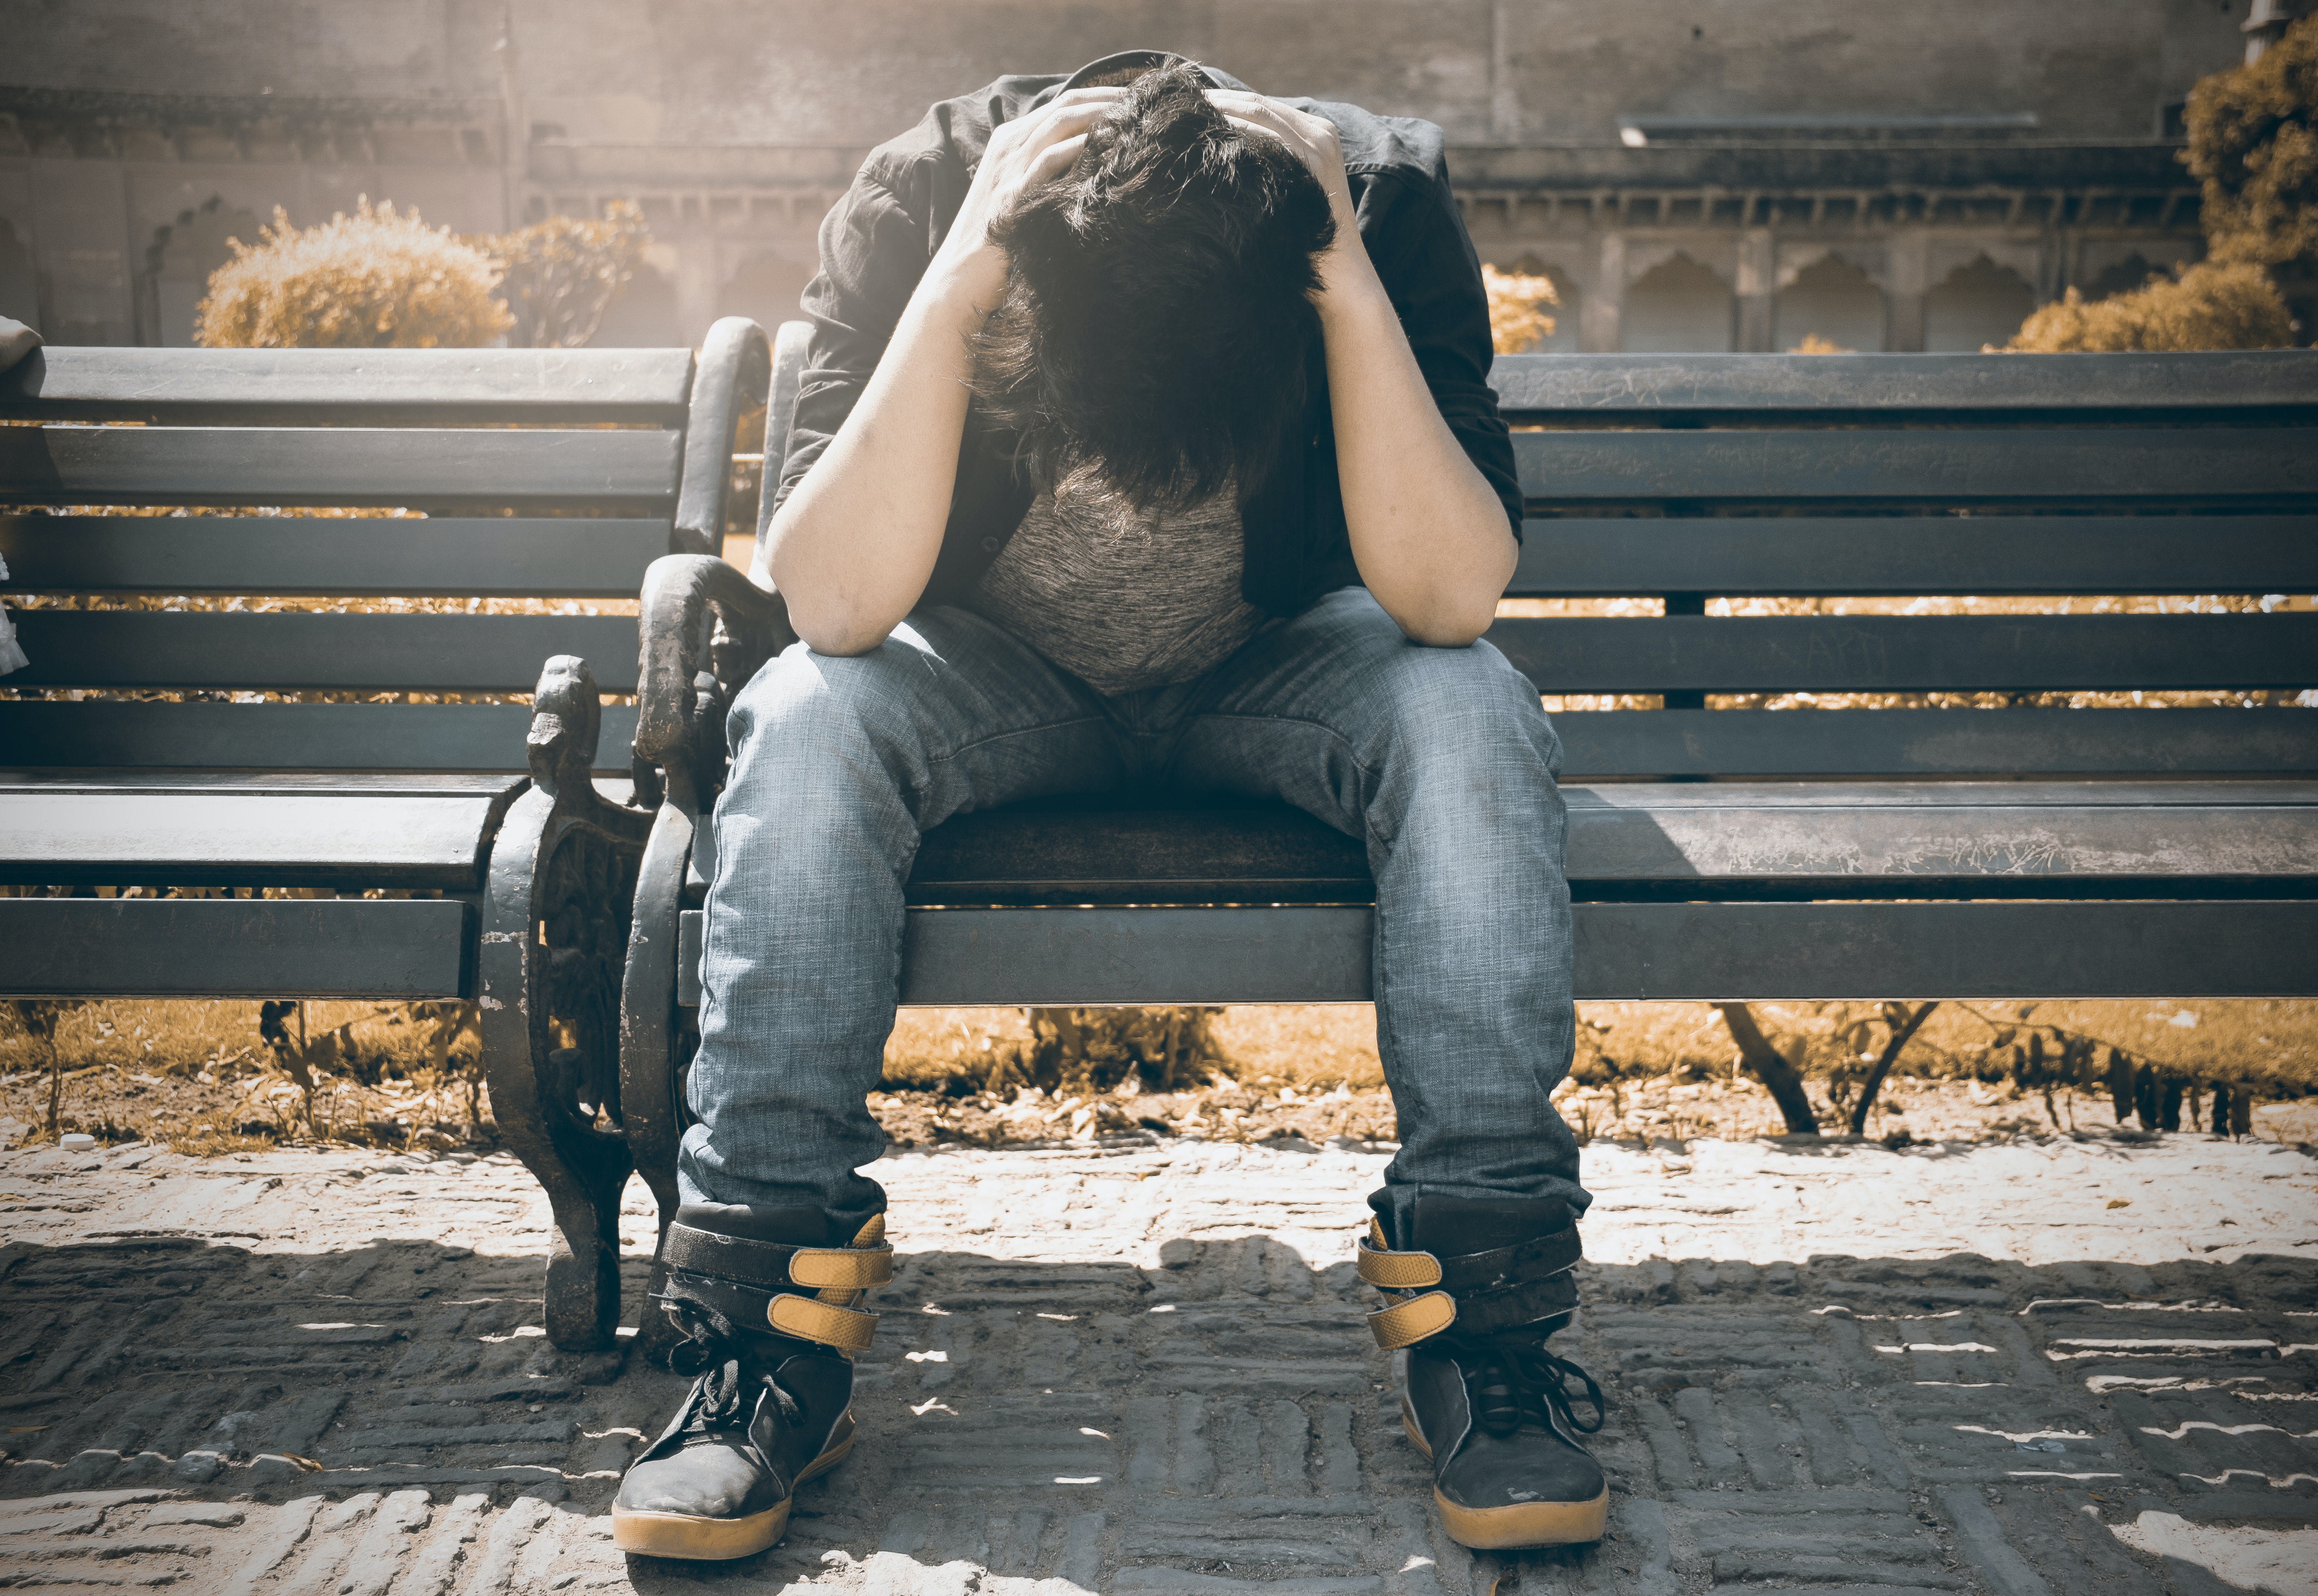 Depresión juvenil: ¿Cómo ayudar a los estudiantes que tienen problemas psicológicos?